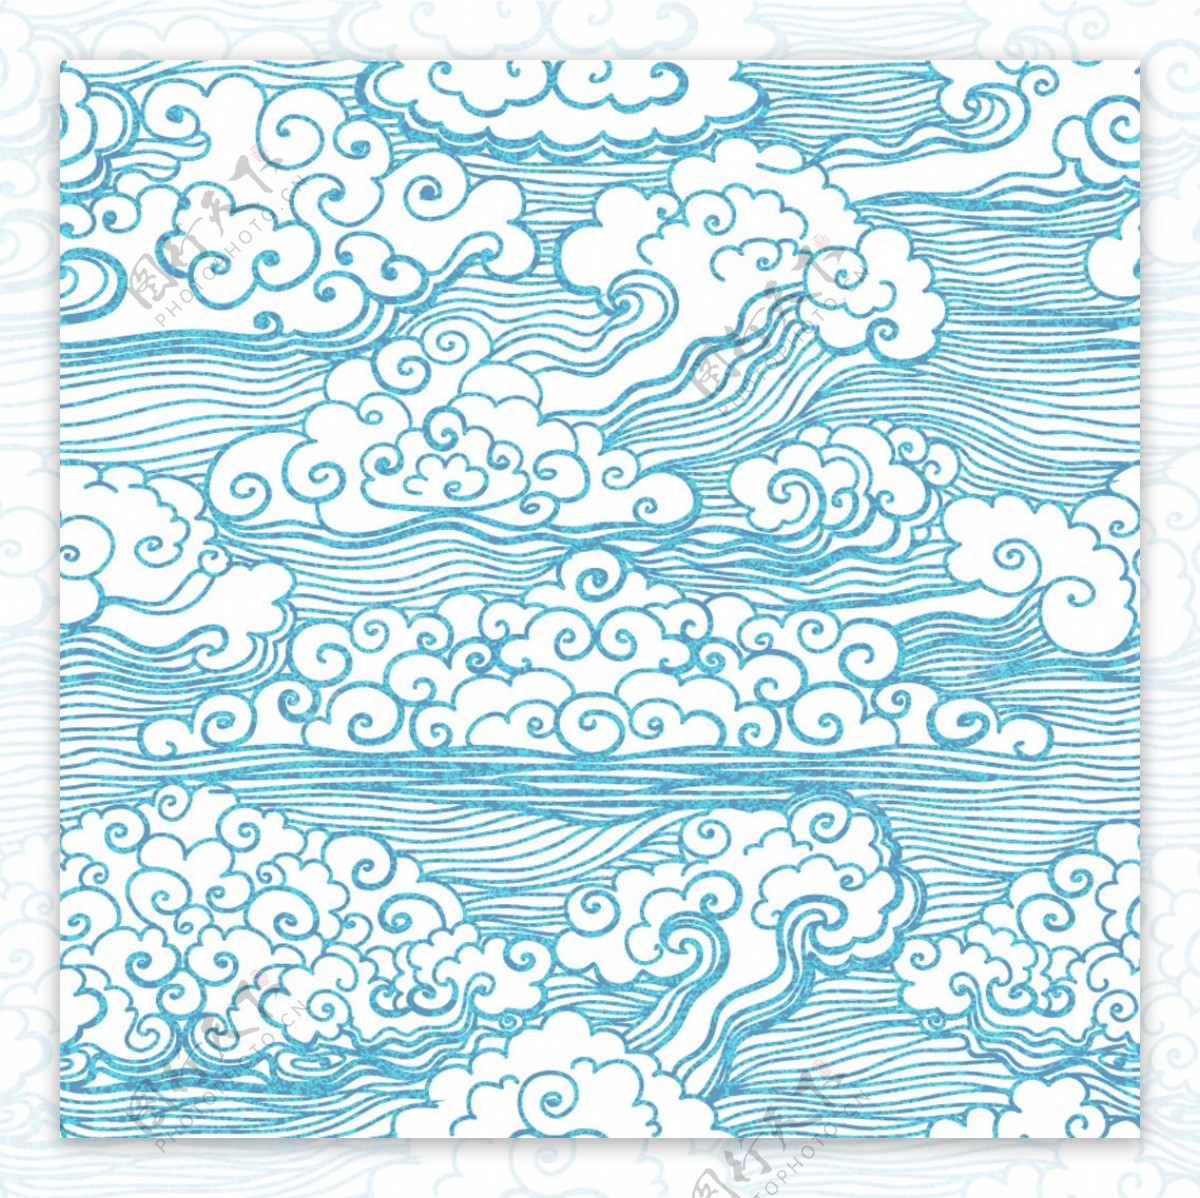 蓝色海浪花纹背景图